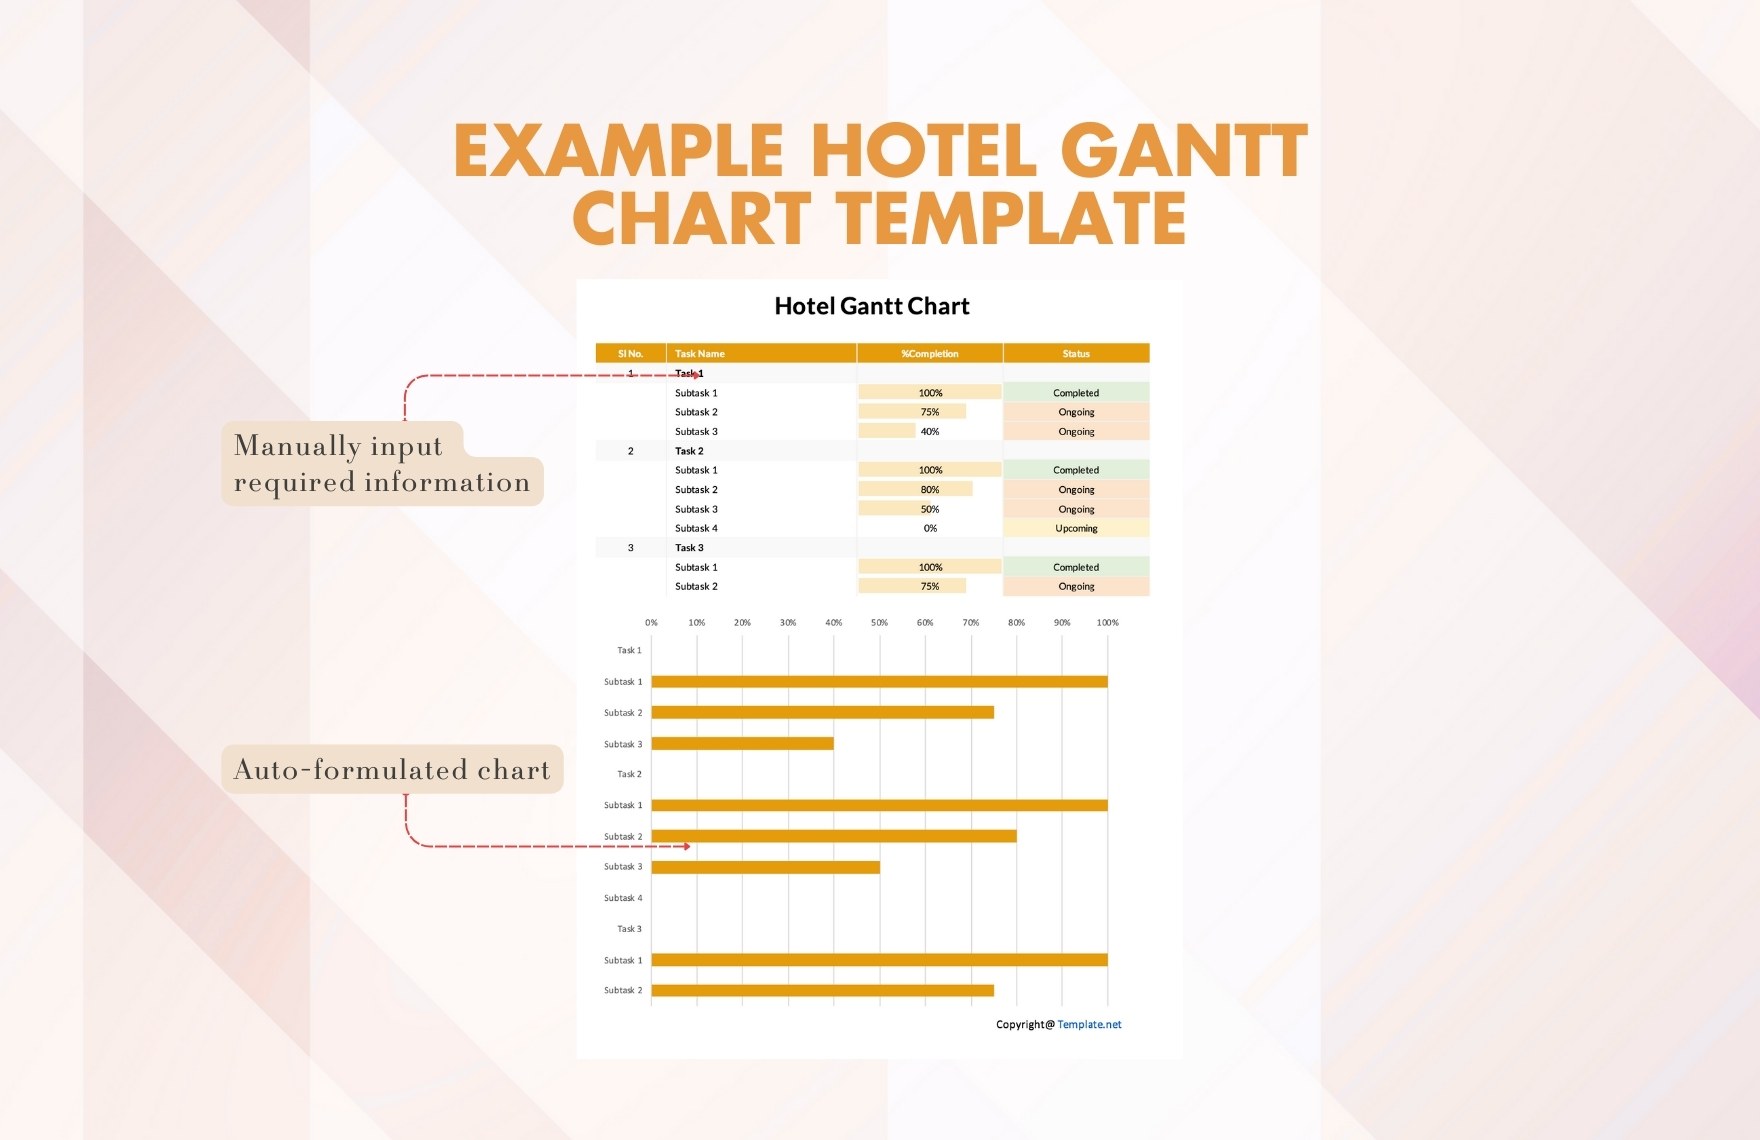 Example Hotel Gantt Chart Template